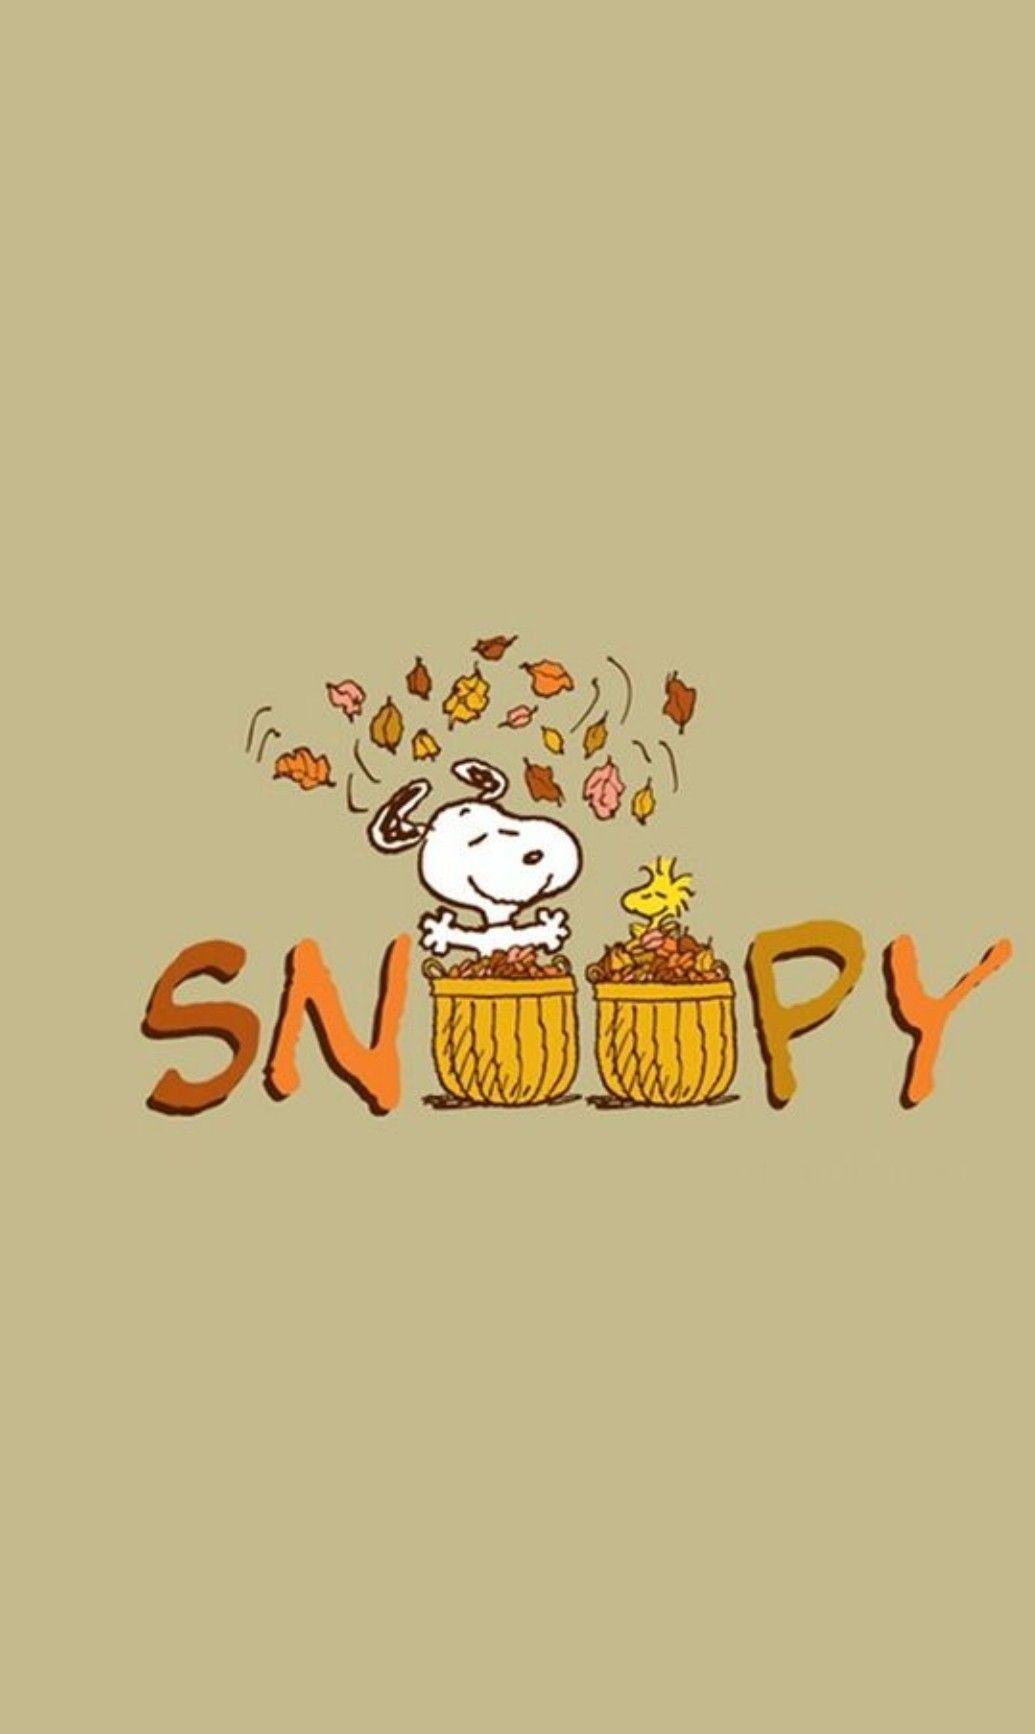 スヌーピー. Snoopy wallpaper, Happy thanksgiving wallpaper, Snoopy